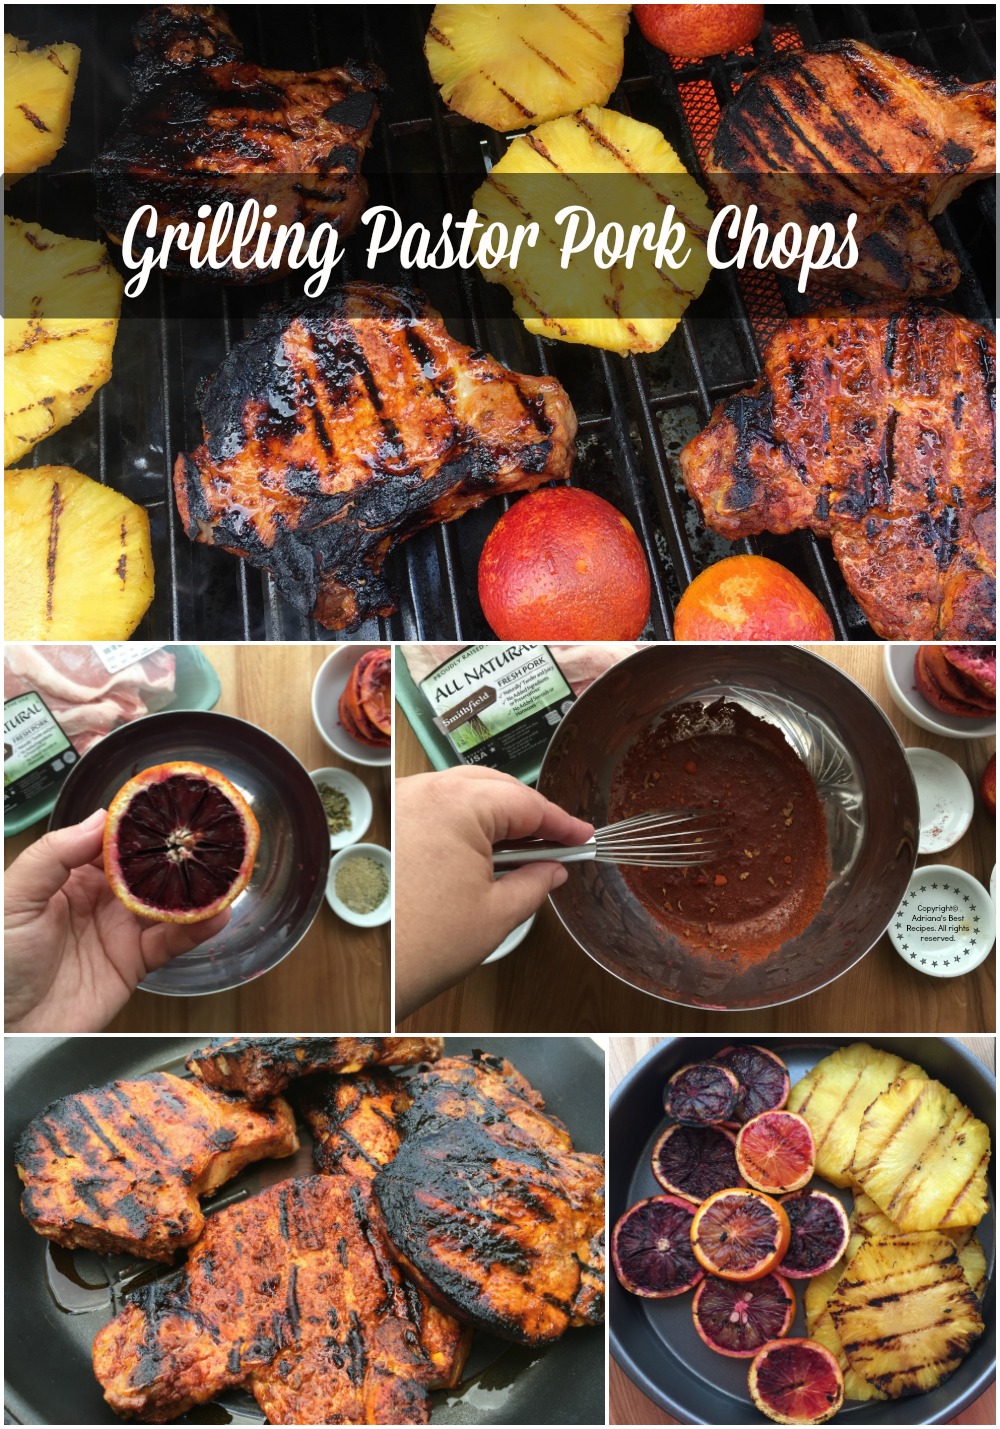 Grilling Pastor Pork Chops